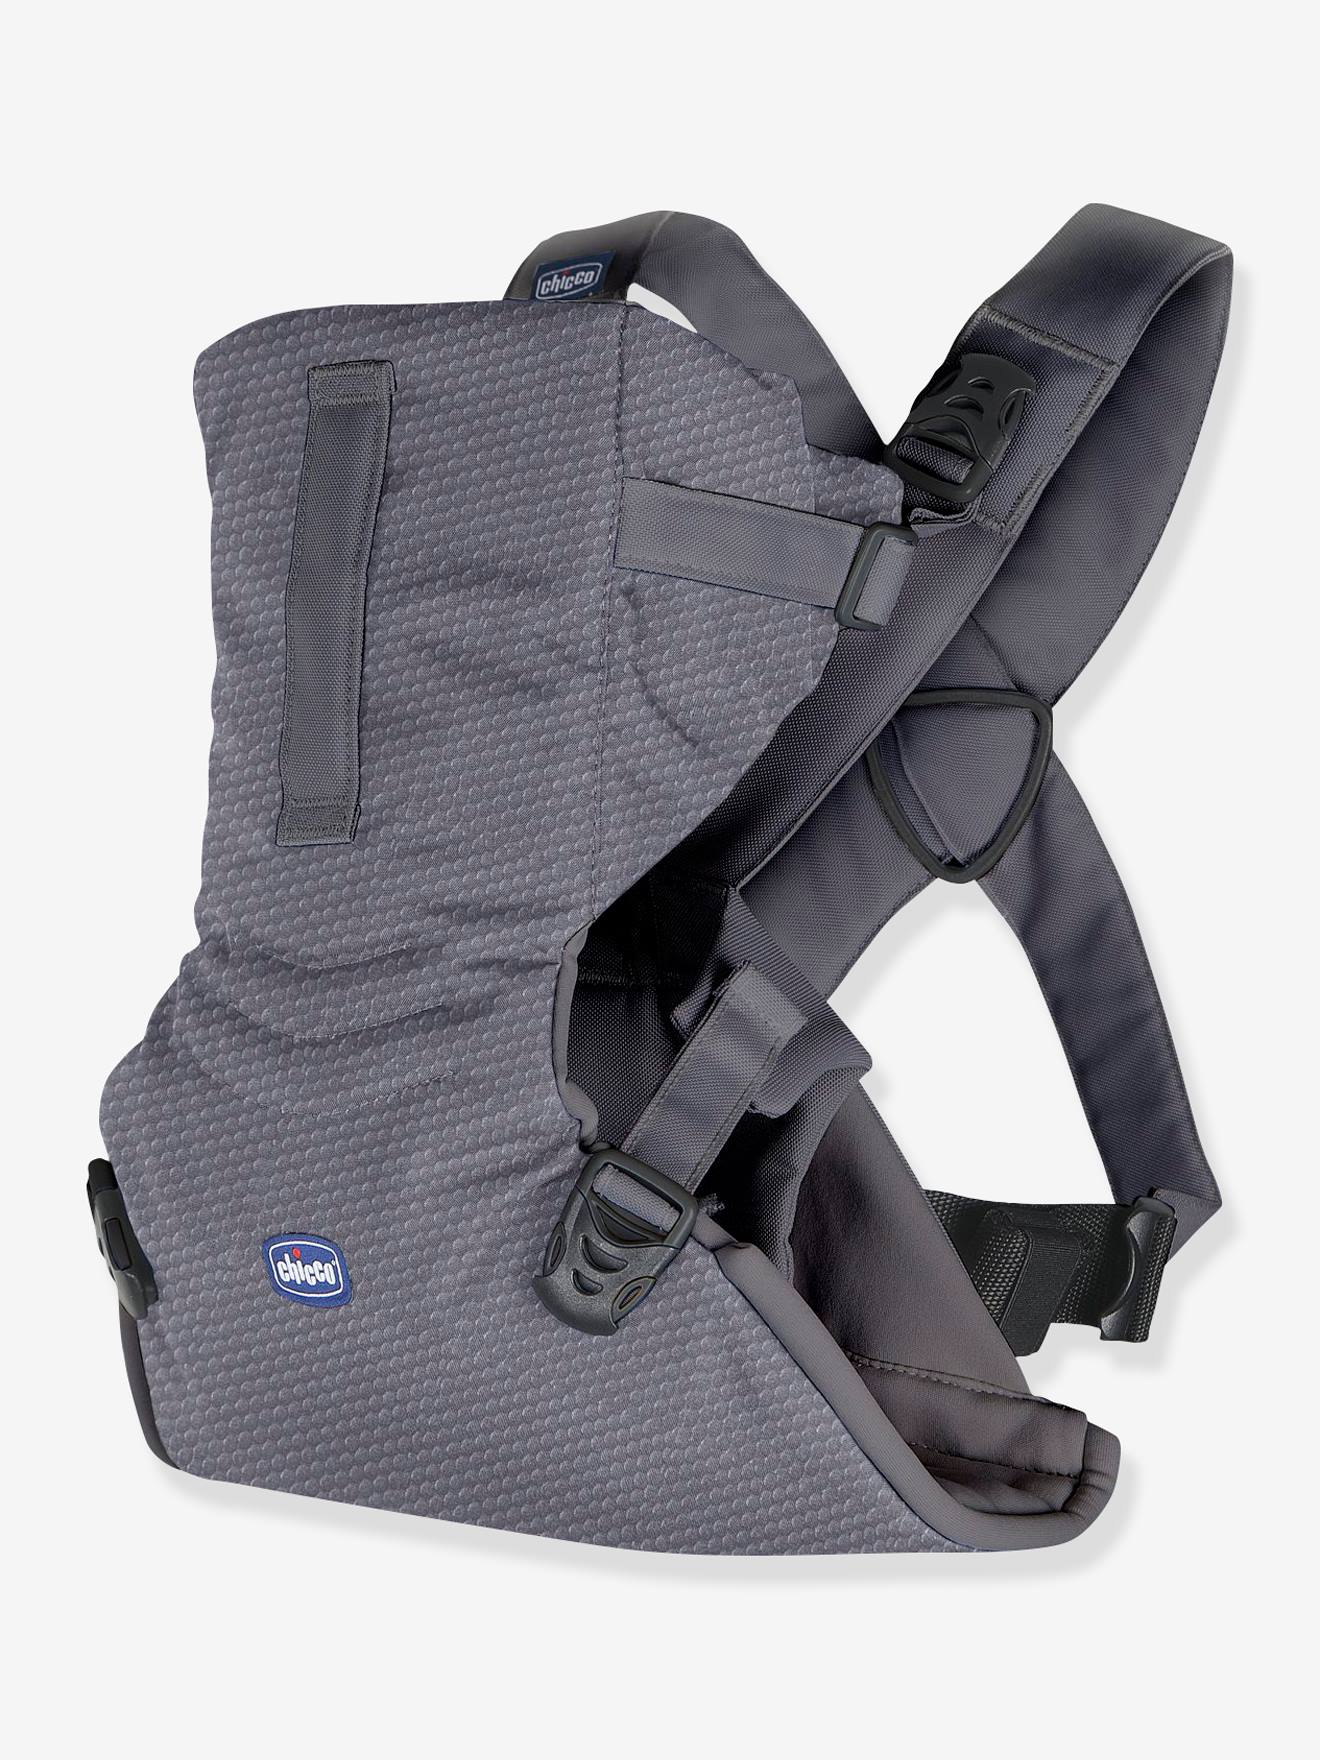 Porte-bébé ergonomique CHICCO Easyfit - gris, Puériculture